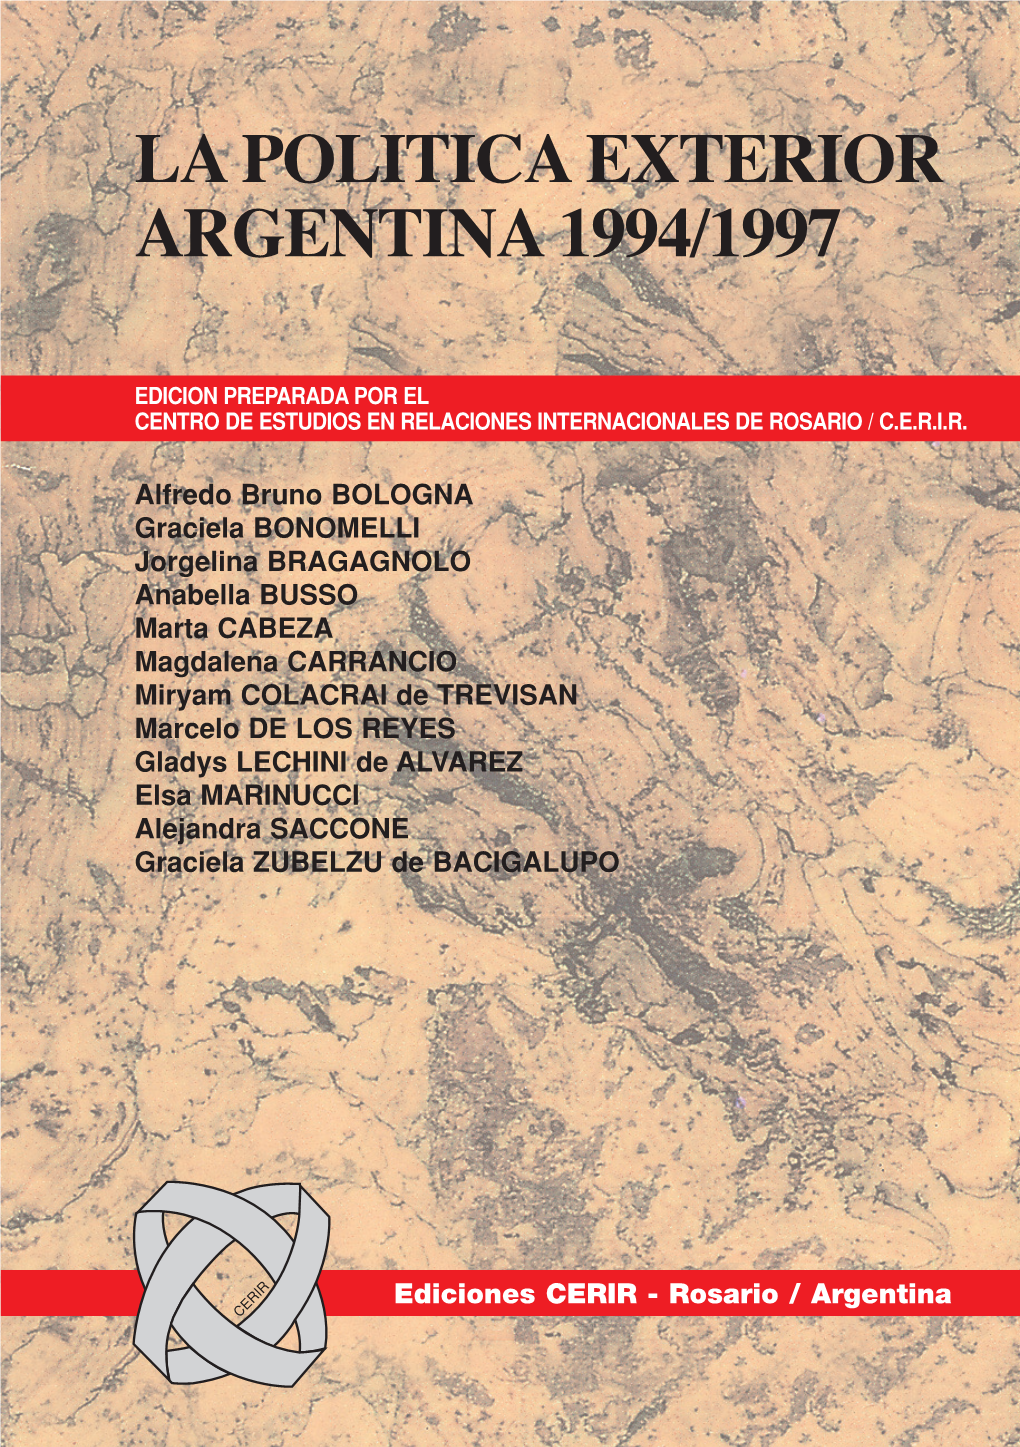 La Politica Exterior Argentina 1994/1997